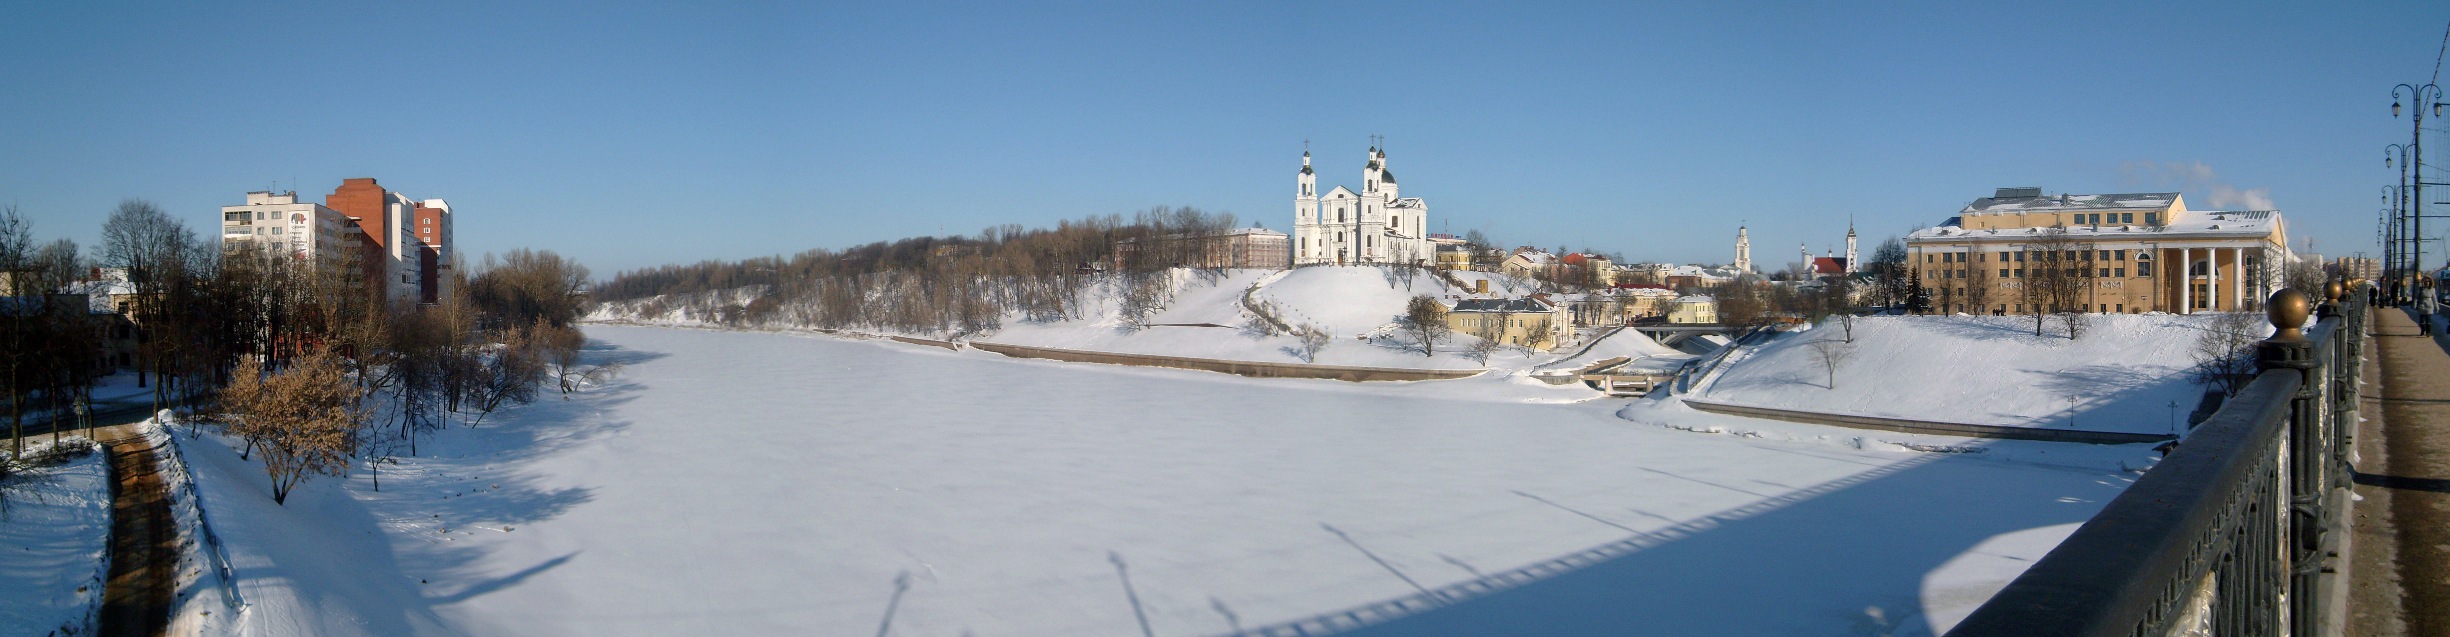 витебск зимой фото